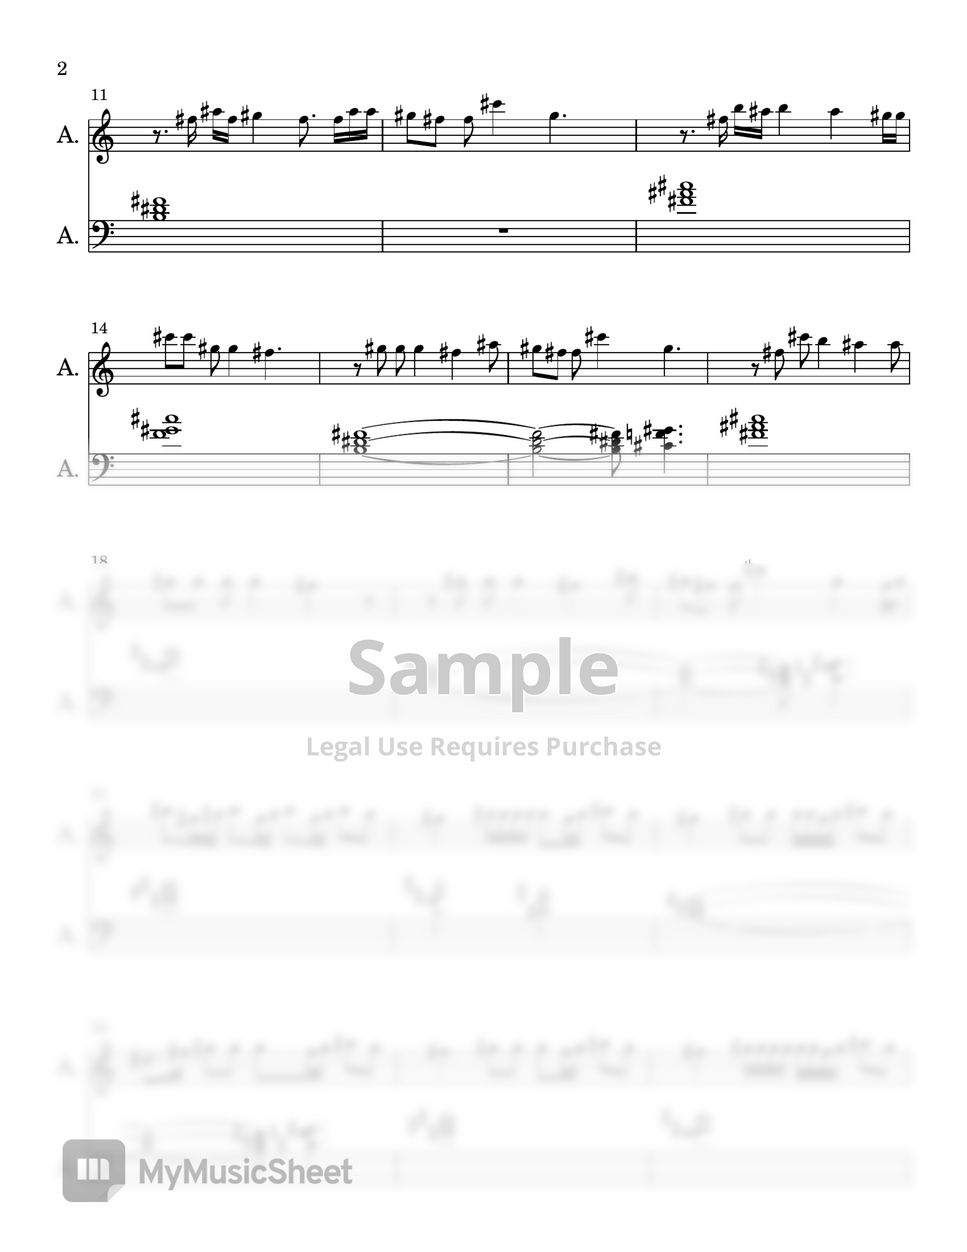 Fireboy DML - Bandana (EASY PIANO SHEET) by Synthly